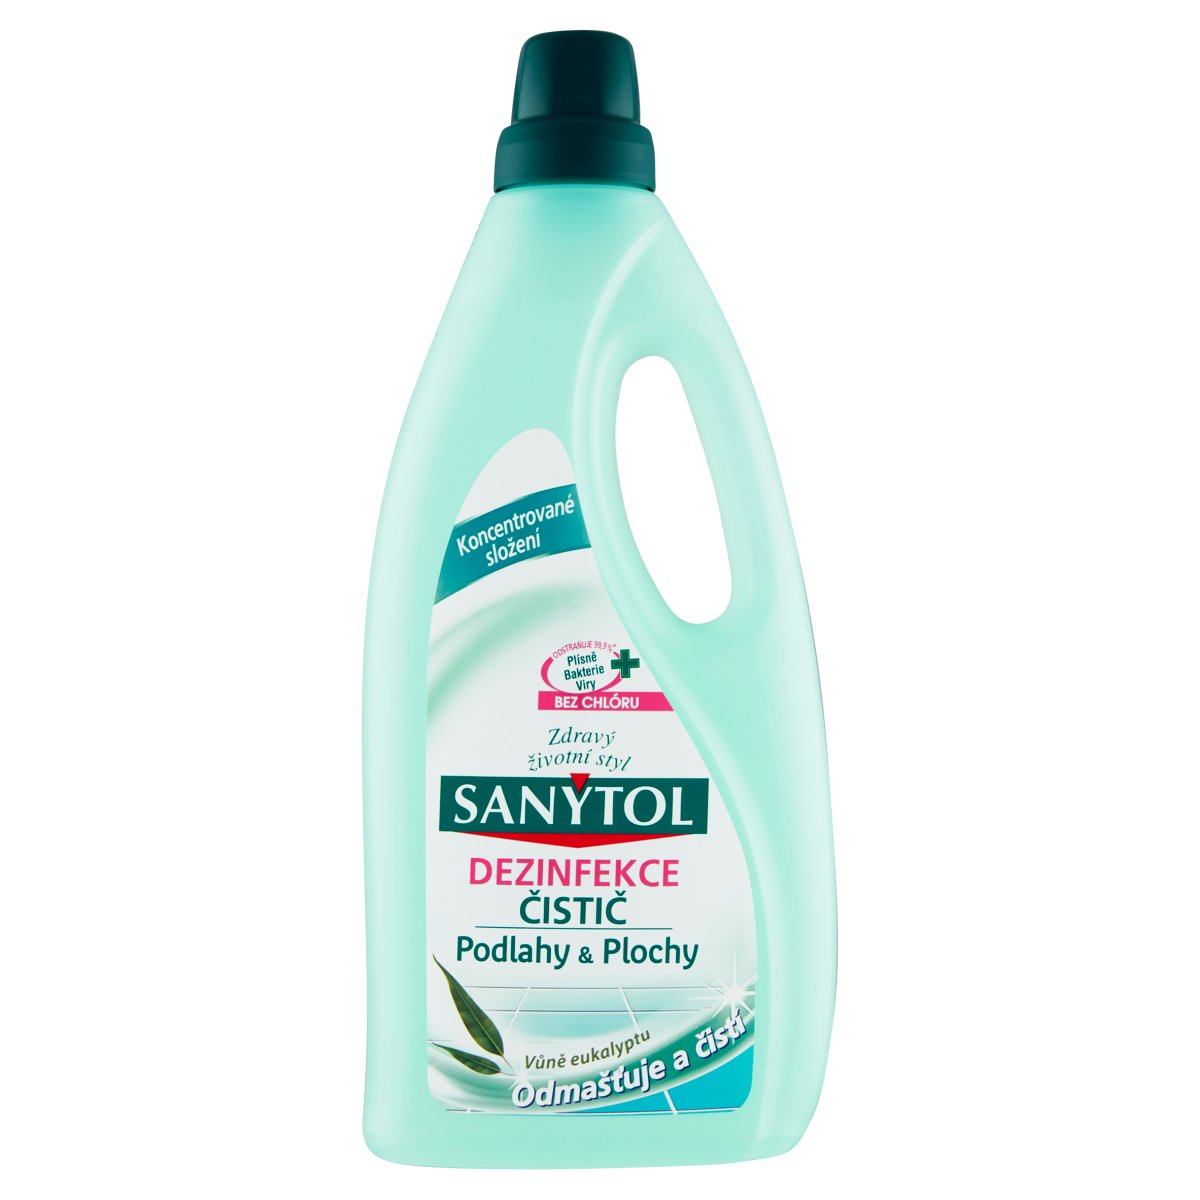 Sanytol dezinfekčný čistič na podlahy a plochy 4 účinky 1l